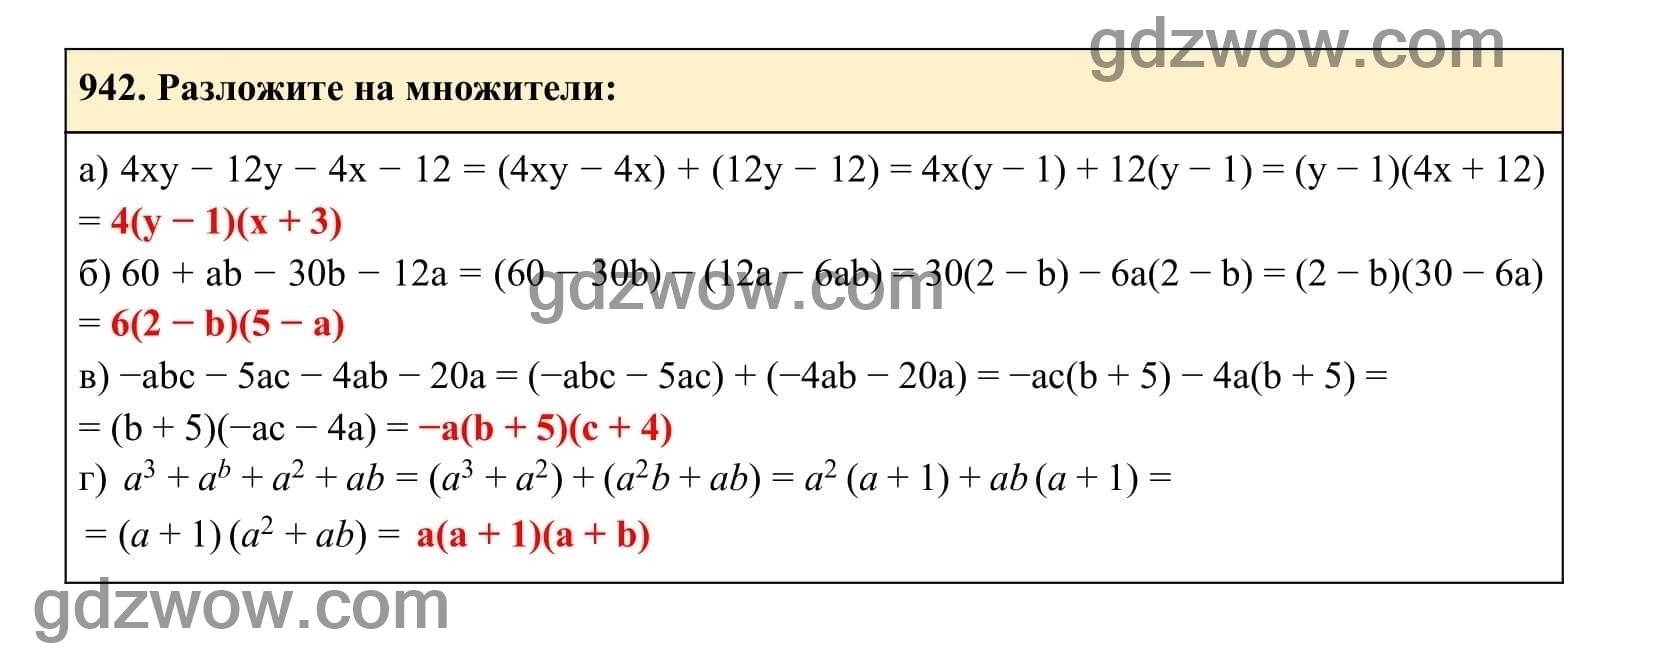 Упражнение 942 - ГДЗ по Алгебре 7 класс Учебник Макарычев (решебник) - GDZwow